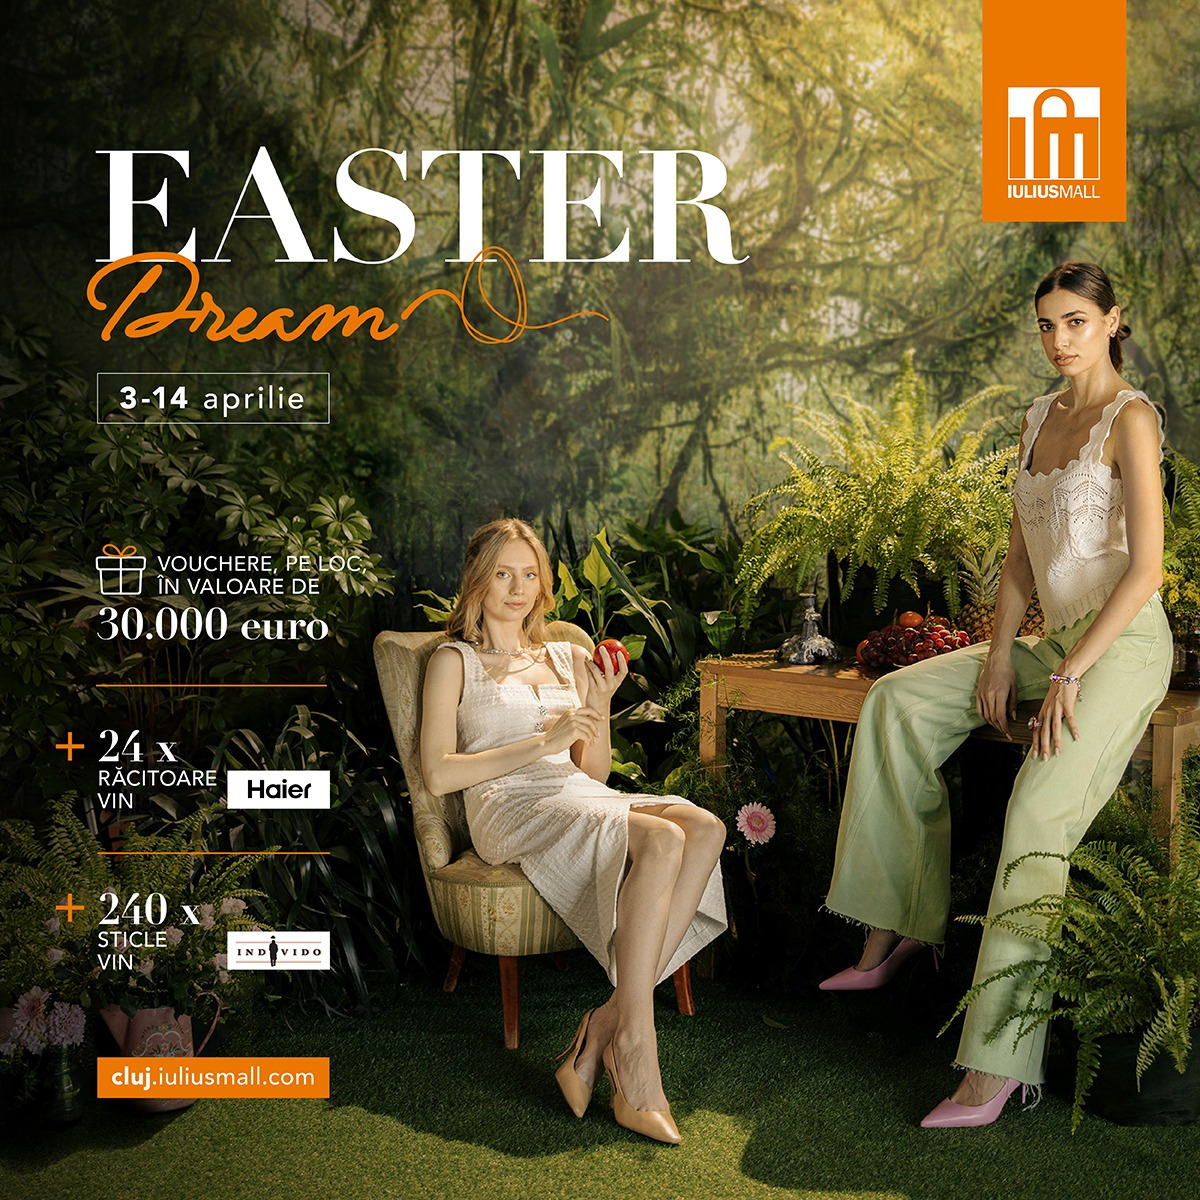 Cu Easter Dream totul este la superlativ în Iulius Mall Cluj: sesiuni de shopping în ton cu dorințele tale și premii de 30.000 de euro